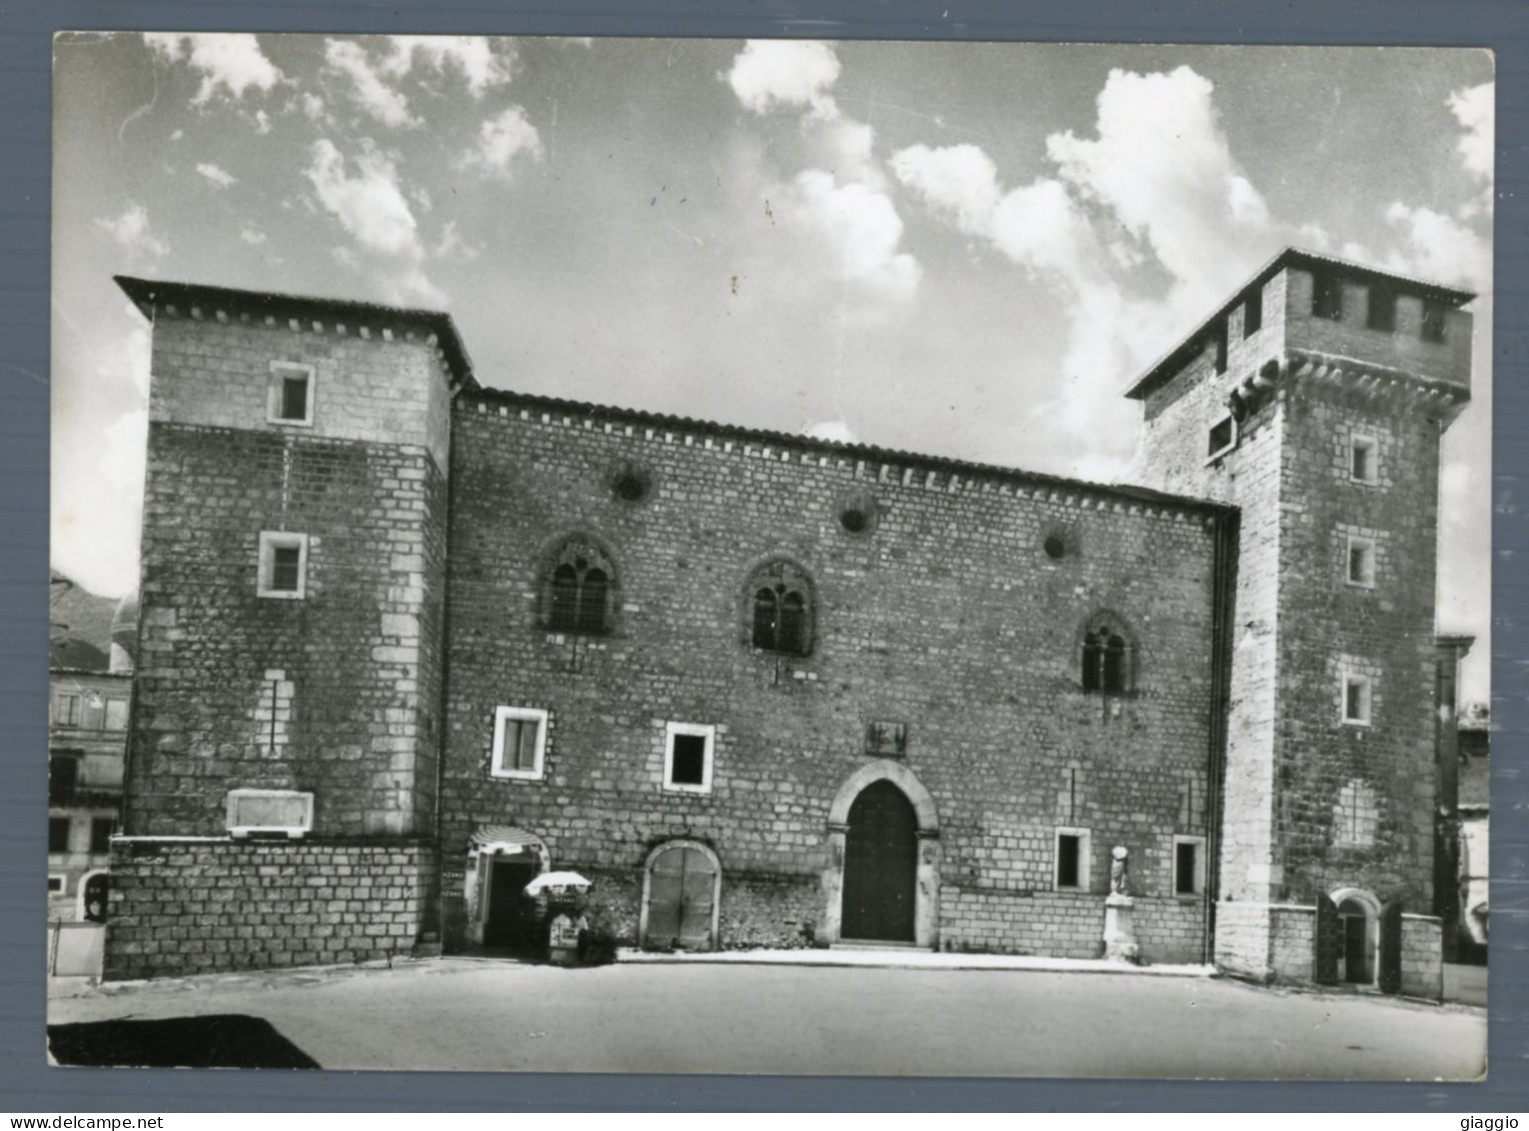 °°° Cartolina - Atina Palazzo Duca Cantelmi - Nuova °°° - Frosinone